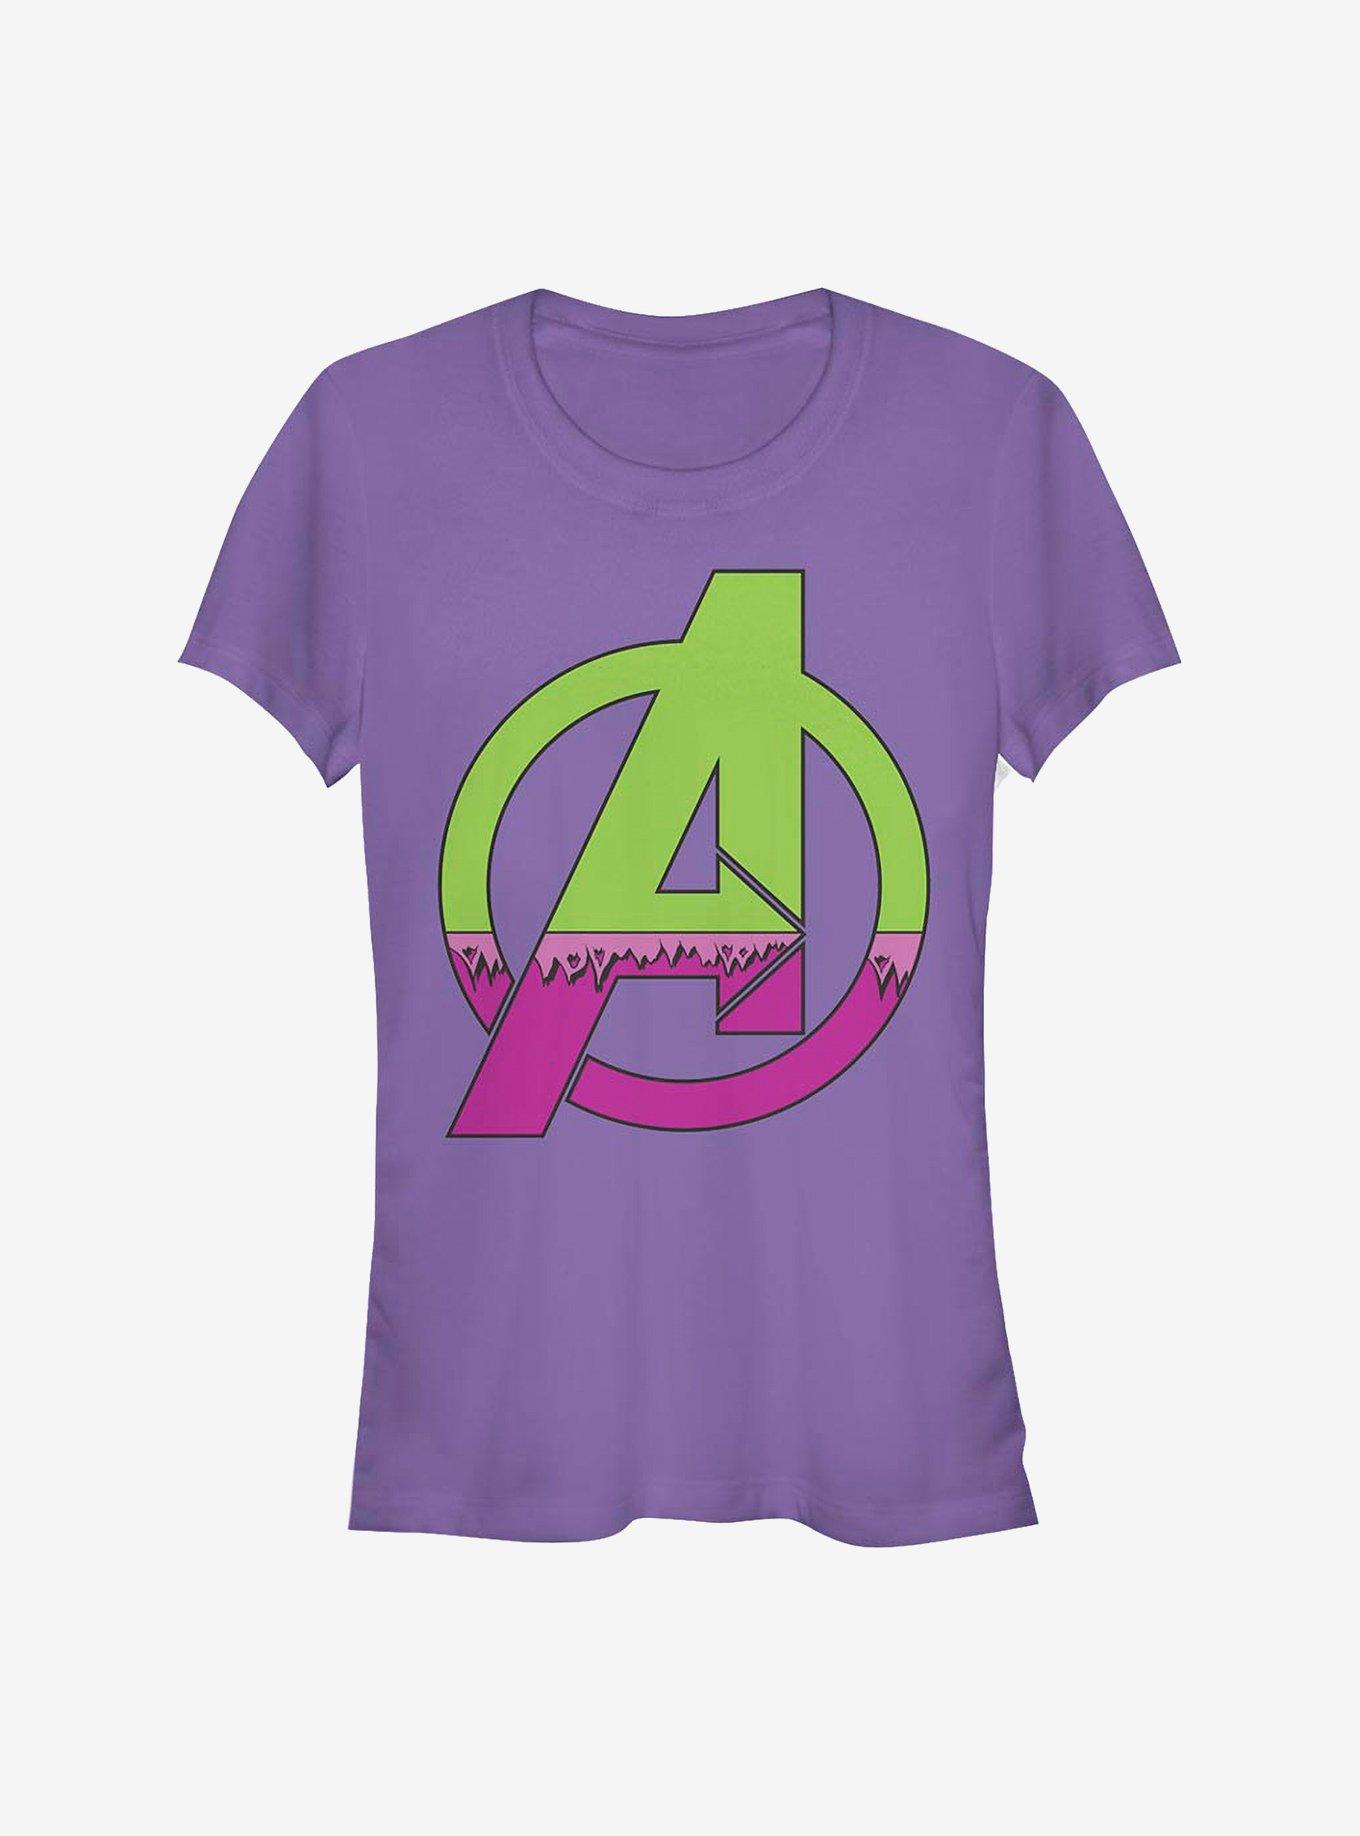 Marvel Avengers Avenger Hulk Costume Girls T-Shirt